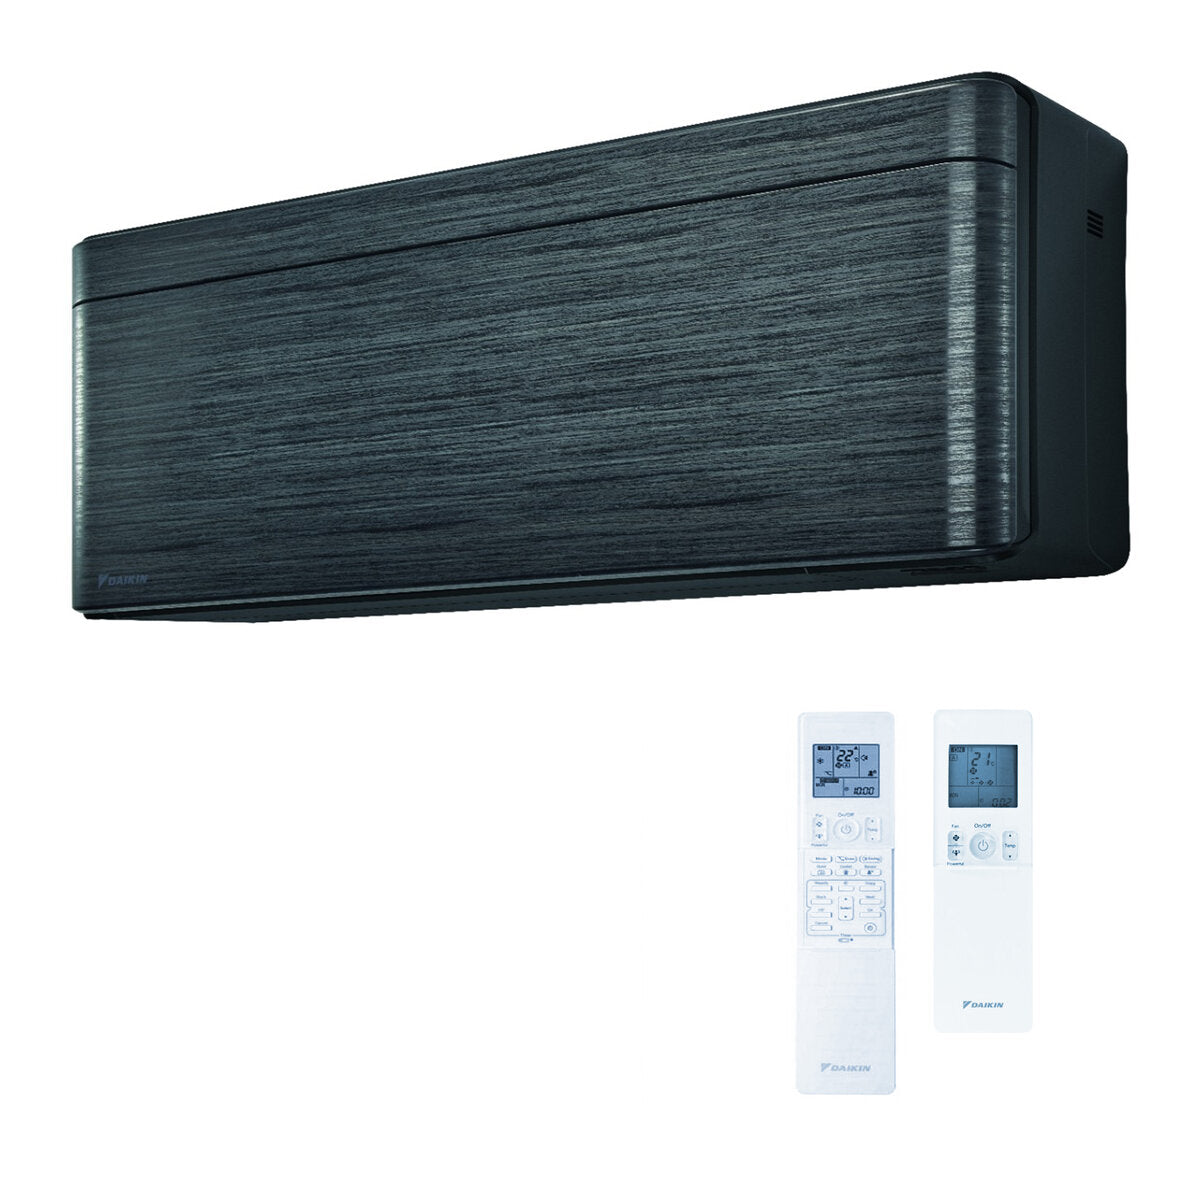 Daikin Stylish air conditioner penta split 9000 + 9000 + 12000 + 12000 + 12000 BTU inverter A ++ wifi outdoor unit 9.0 kW